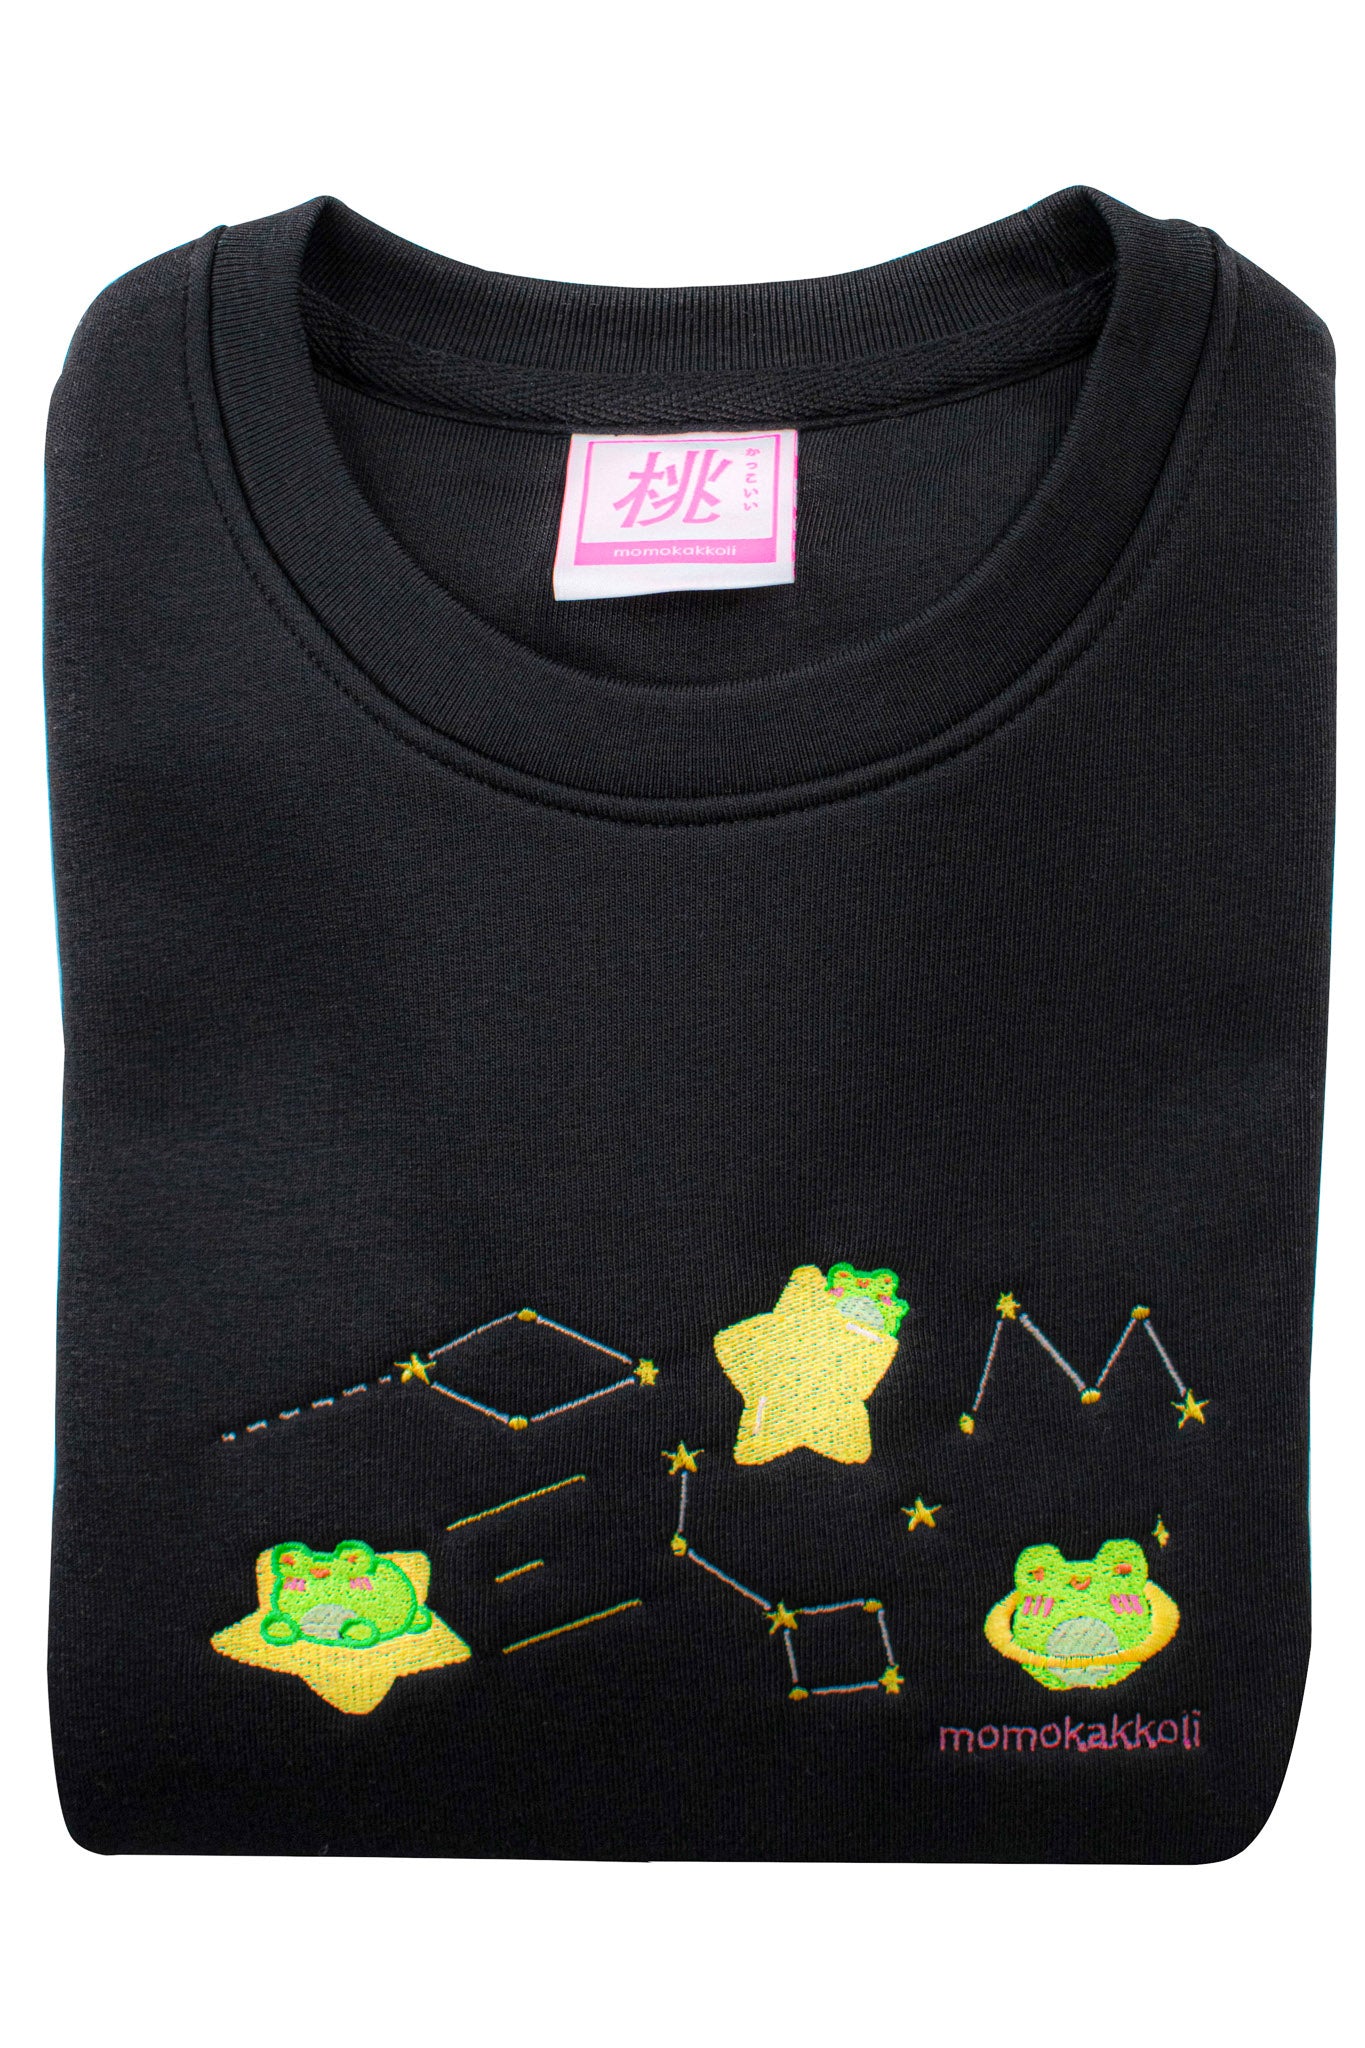 Organic Cotton Cosmic Albert Embroidered Sweatshirt - Momokakkoii